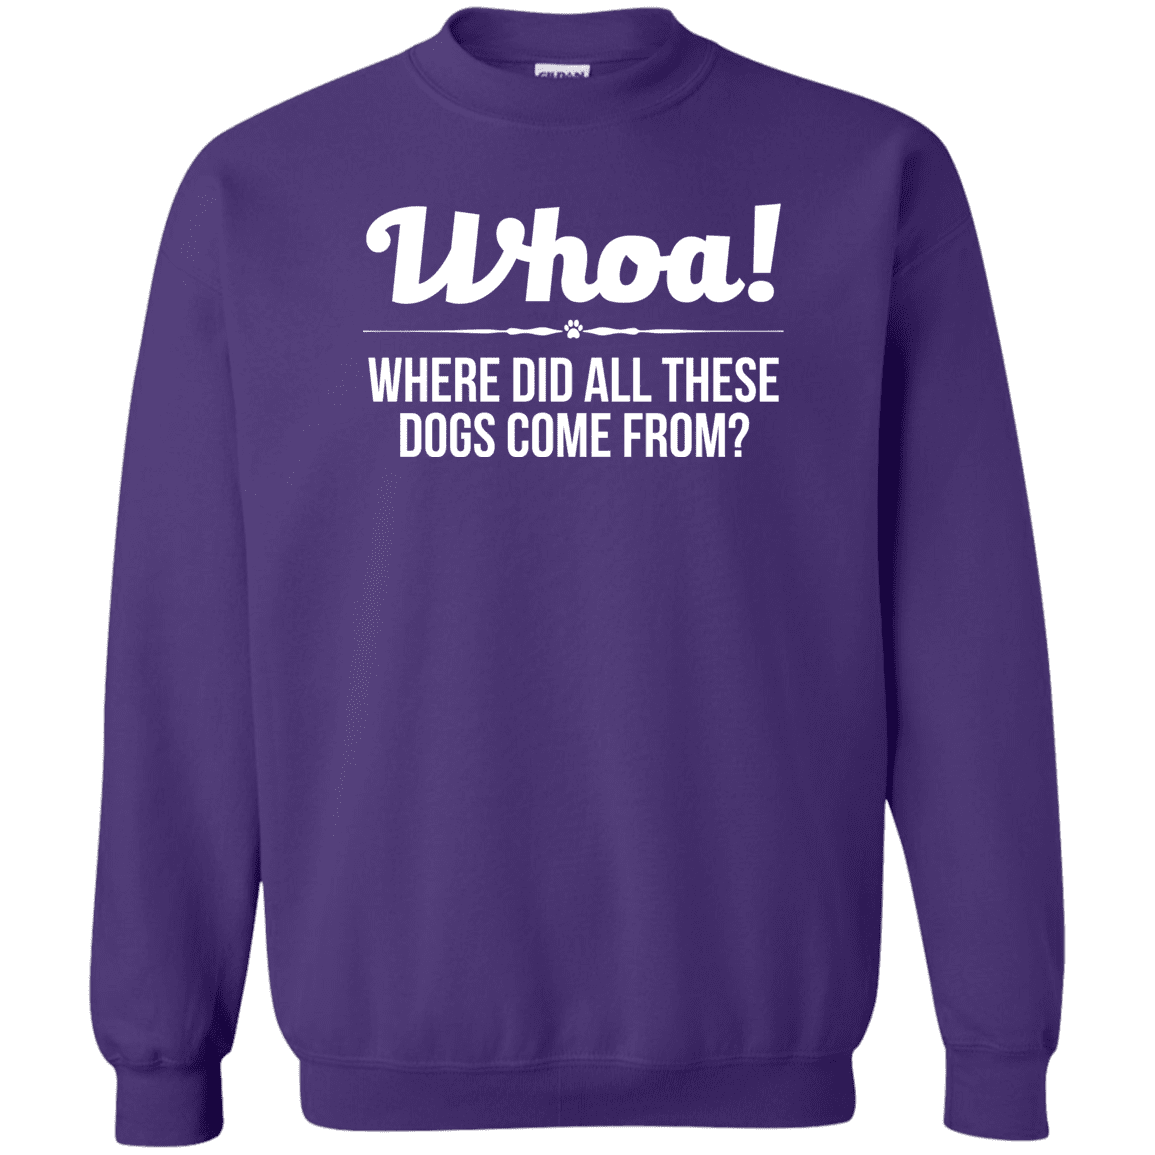 Whoa! - Sweatshirt.